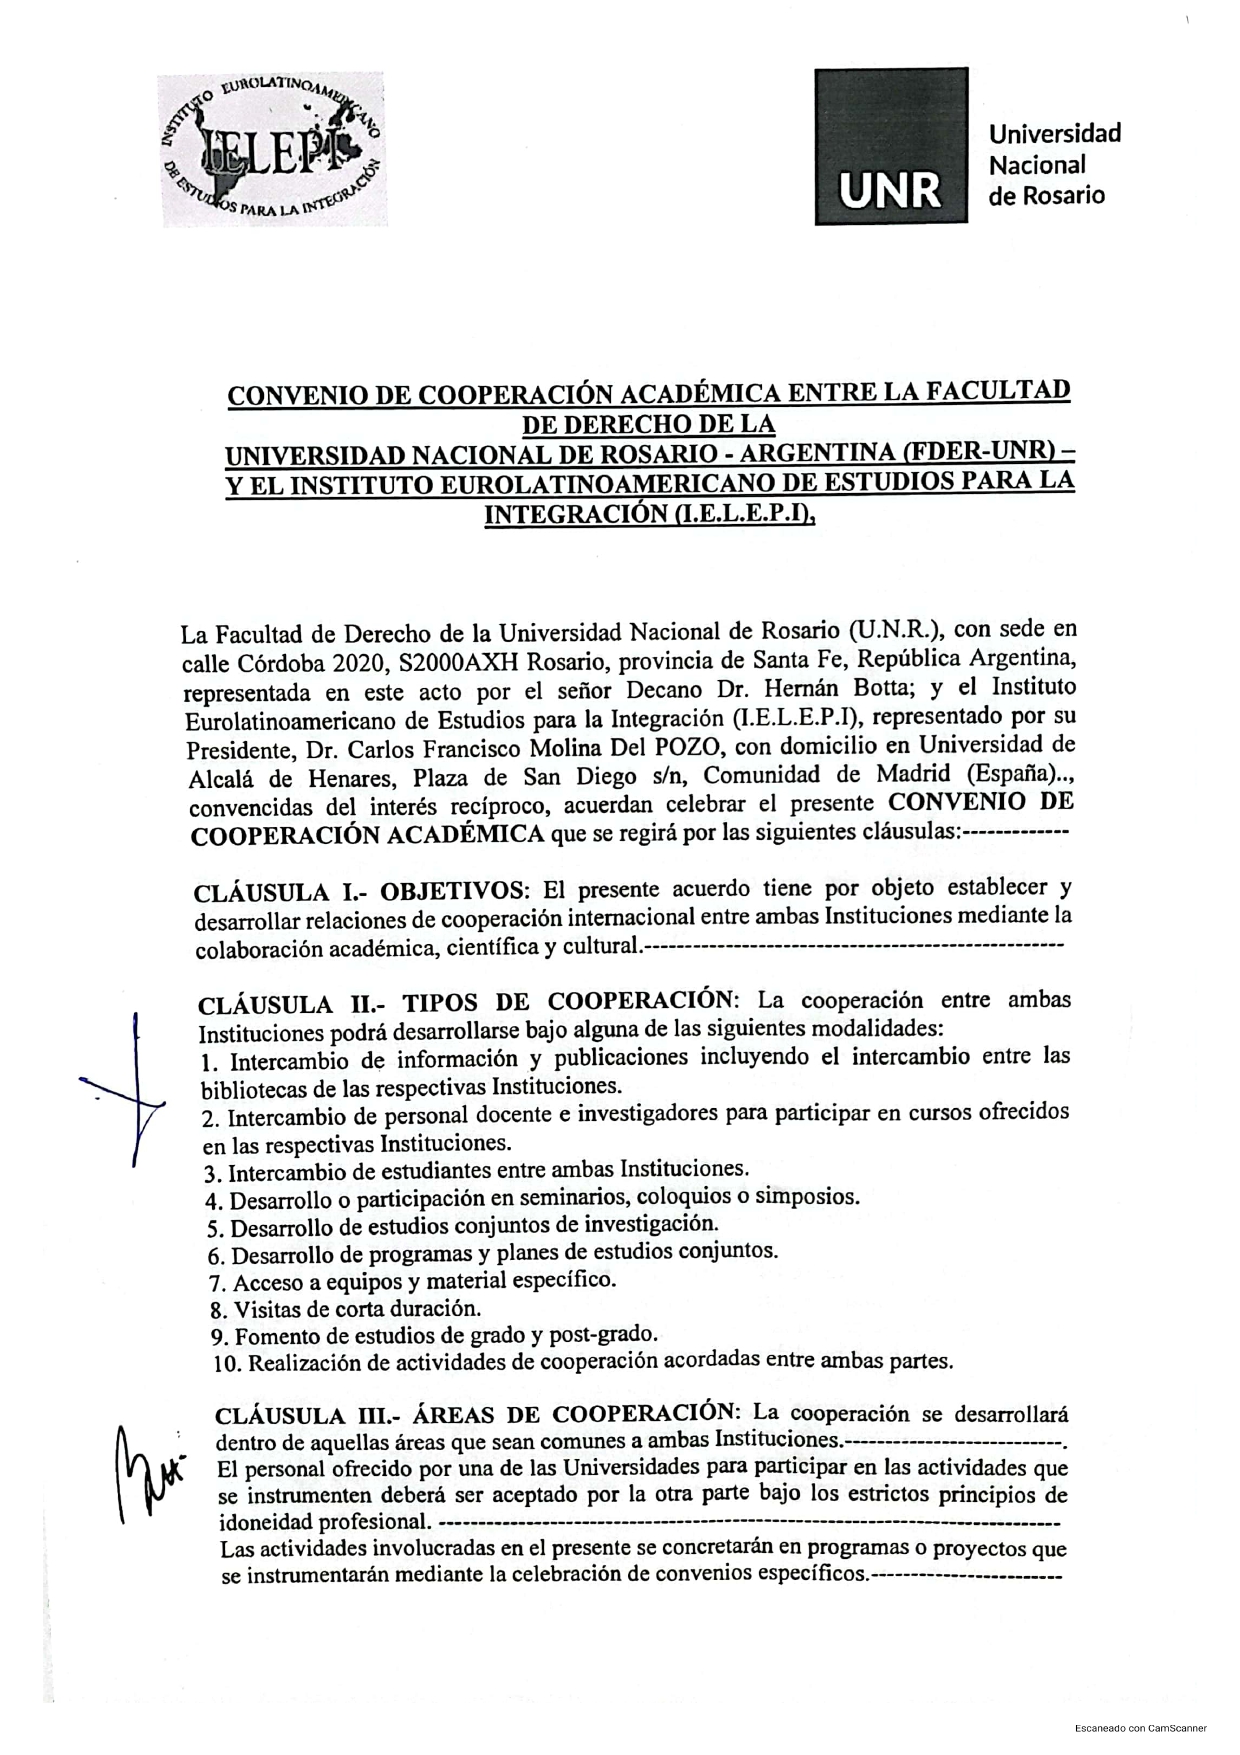 Convenio de Cooperación Académica entre la Facultad de Derecho de la Universidad Nacional de Rosario (FDER U.N.R.) y el Instituto Eurolatinoamericano de Estudios para la Integración (I.E.L.E.P.I.)